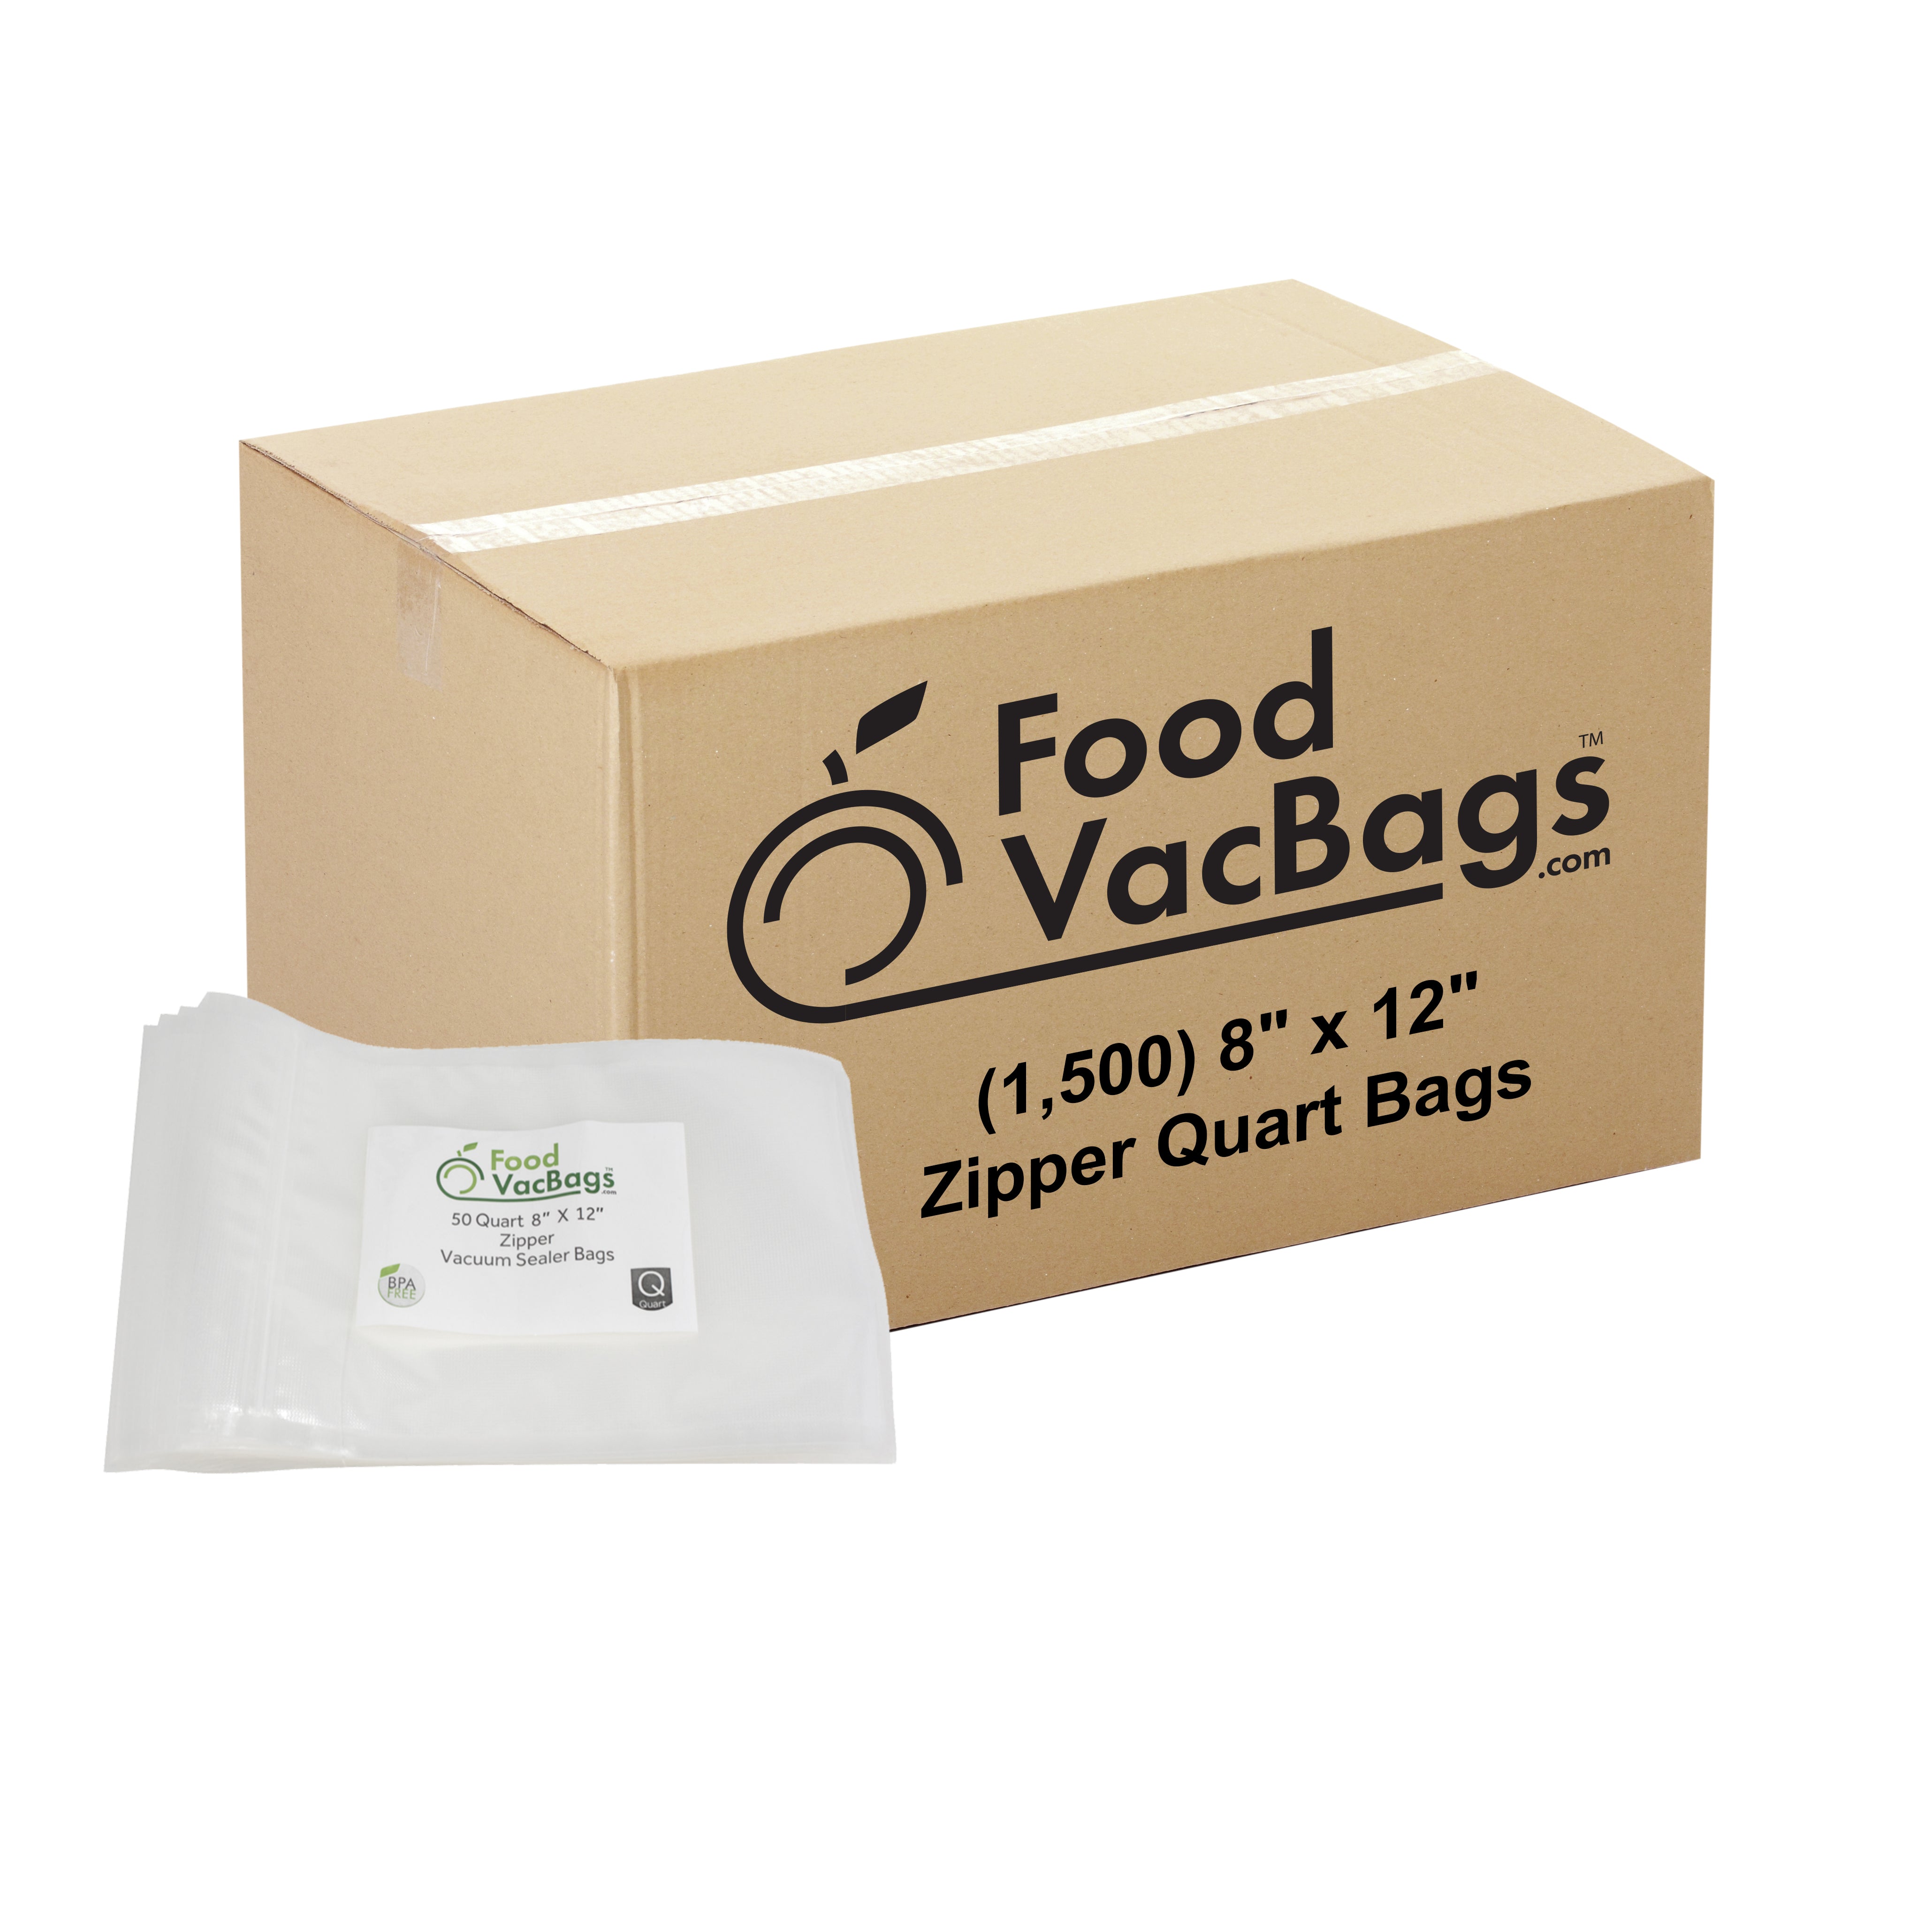 https://foodvacbags.com/cdn/shop/products/8x12-Zipper-1500.jpg?v=1637180460